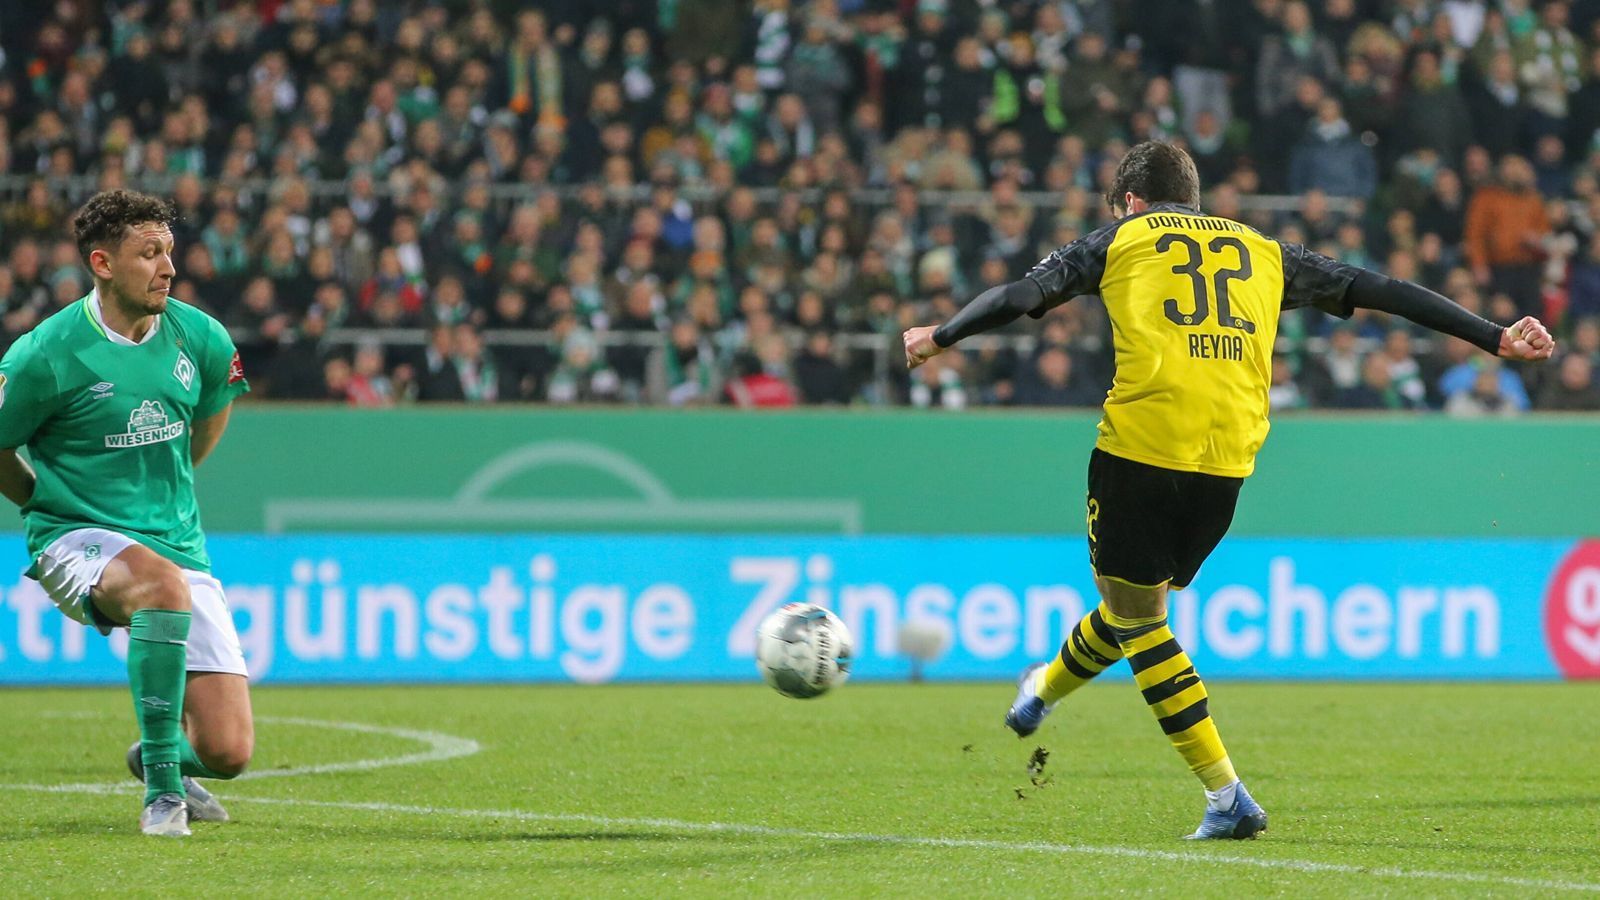 
                <strong>Platz 1 - Giovanni Reyna (Borussia Dortmund)</strong><br>
                Alter zum Zeitpunkt des Tores: 17 Jahre, 2 Monate, 22 TageBegegnung: Werder Bremen - Borussia Dortmund (Ergebnis: 3:2, 04. Februar 2020)
              